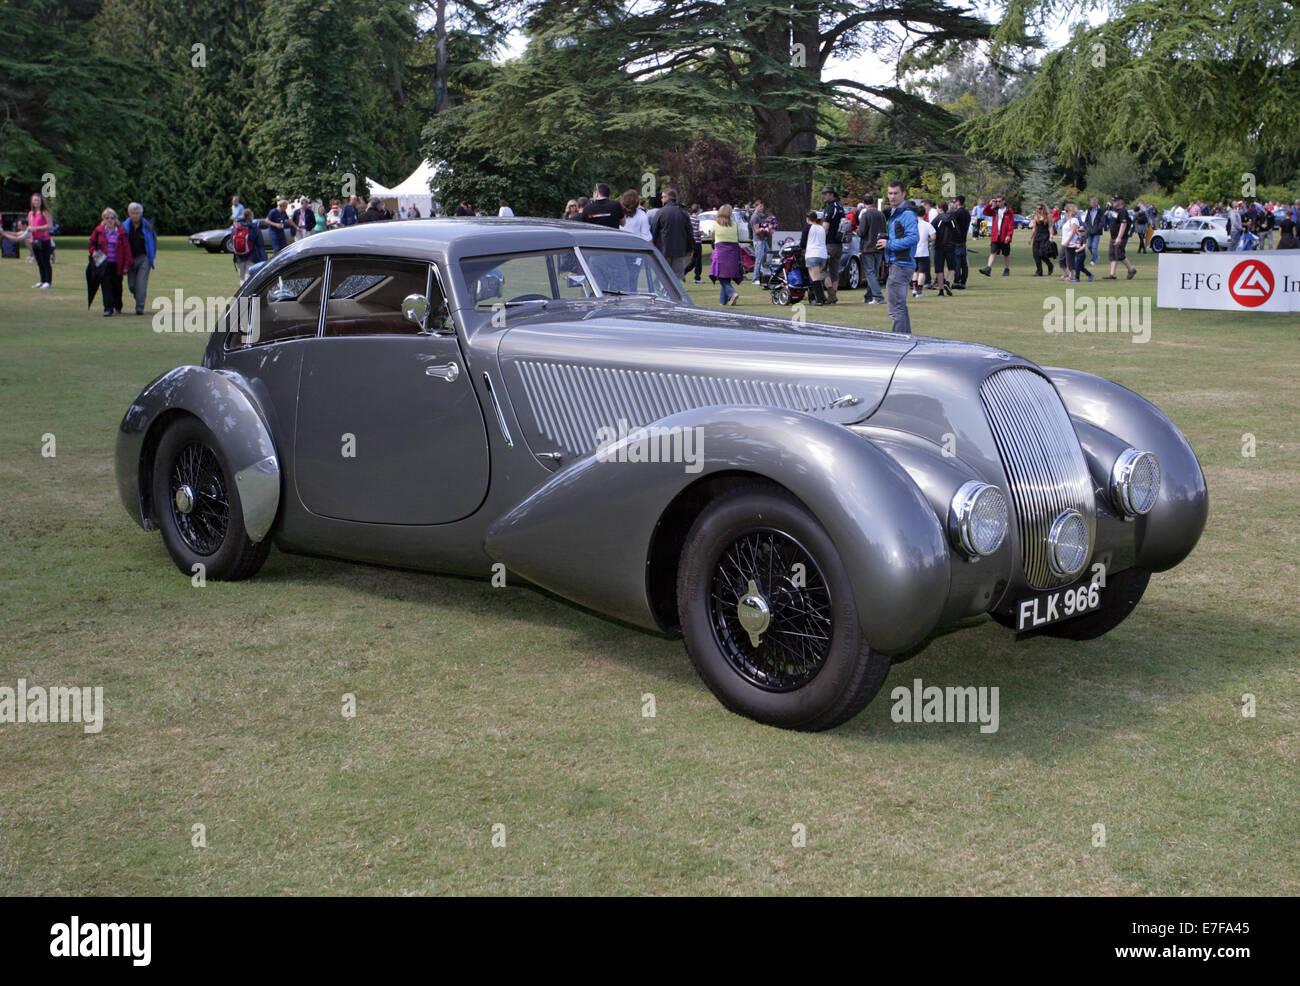 Ein Concours 1939 Bentley 4 1/4 Liter Overdrive ein Auto Westen des Landes  zeigen, UK Stockfotografie - Alamy